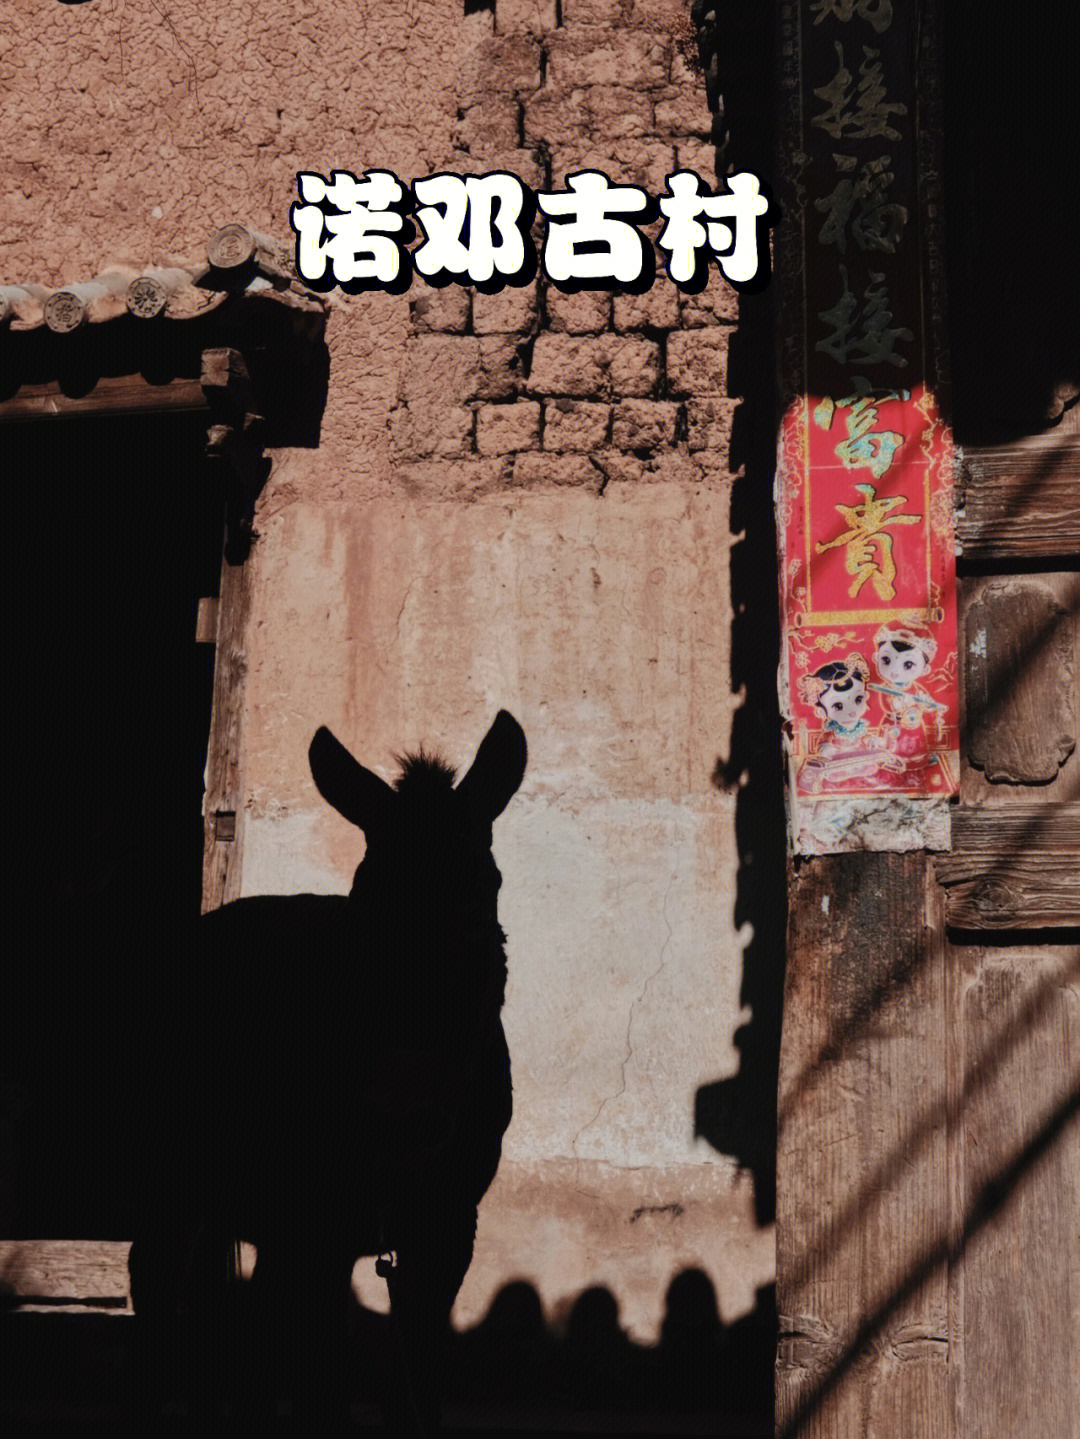 舌尖上的中国 让「诺邓」这个古老村庄进入了大众的视野这里除了火腿